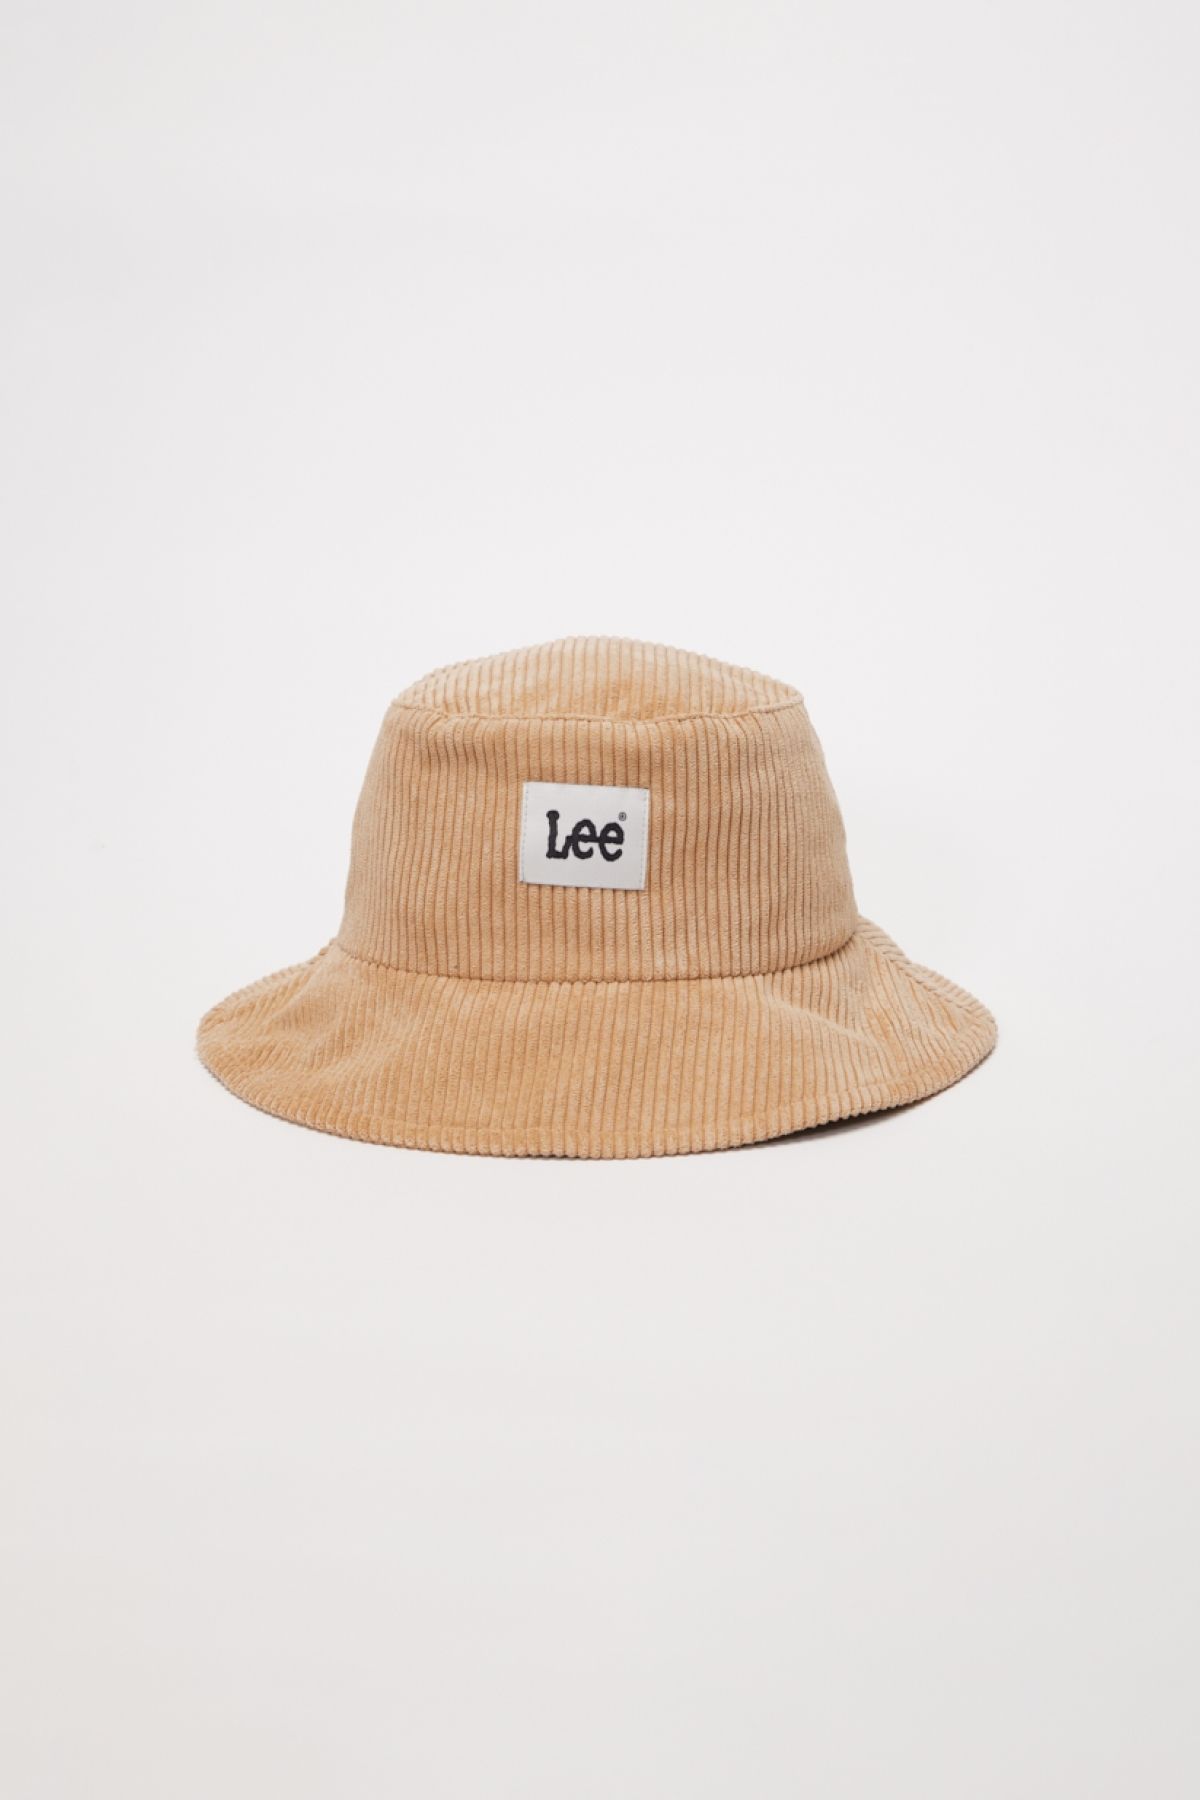 Lee Bej Kadın Şapka